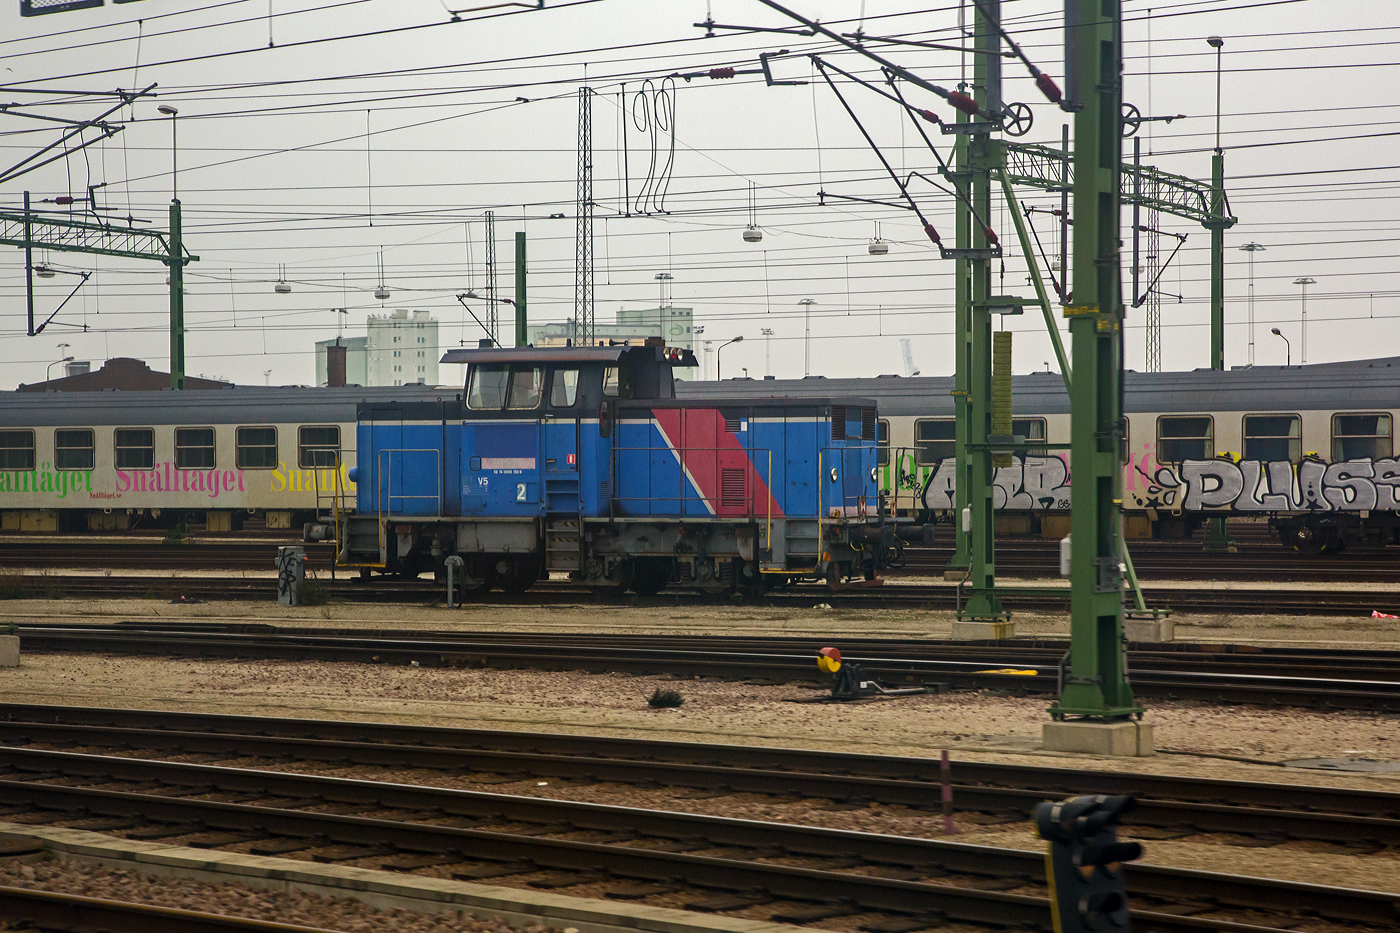 Bei Malmö steht am 20 März 2019 die schwedische Diesellokomotive der Baureihe V5, die  GC V5 152 - 92 74 0000 152-9 S-GC, ex SJ V5 152, eine Henschel DHG 625 C. Ein Bild aus dem EC von Kopenhagen nach Stockholm.

Die Henschel DHG 625 C wurde 1976 von Henschel & Sohn in Kassel (Deutschland) unter der Fabriknummer 31955 gebaut und die SJ (Statens Järnvägar, ehemaligen schwedische Staatsbahnen) geliefert. Nach der 2001 erfolgten Aufteilung von SJ gingen alle Lokomotiven an die Güterverkehrssparte Green Cargo. Sie werden dort unter der Baureihenbezeichnung GC V5 mit den gleichen Betriebsnummern geführt. Im Jahr 2020 ging Nordic Re-Finance AB und wurde an die VÄTE (VÄxling Terminal) in Trelleborg für den Einsatz im Hafen Trelleborg vermietet.

Henschel - DHG 625 C (SJ V 4 bzw. V 5)
Unter der Bezeichnung DHG 625 C wurden zwei recht verschiedene Lokomotivtypen für die schwedische Staatsbahn SJ gebaut. Zunächst wurden im Jahr 1973 zehn Lokomotiven geliefert, die als Baureihe V 4 eingereiht wurden. Sie lehnten sich eng an schwedische Konstruktionen an und ähnelten sehr stark den zu jener Zeit in Schweden entstandenen zweiachsigen Loktypen.

Ab 1975 folgten 40 weitere DHG 625 C, die sich deutlich von den zuvor gelieferten Lokomotiven unterschieden. Sie hatten ein anderes Fahrwerk, das weitgehend dem der gleichzeitig gebauten Standardlokomotiven entsprach. Die Aufbauten waren rechtwinkliger geworden und das Führerhaus sah deutlich mehr nach dem Henschel-Standard aus. Diese Lokomotiven erhielten bei der SJ die Bezeichnung V5. Alle 50 Lokomotiven gingen im Jahr 2001 in das damals aus der SJ ausgegründete Güterverkehrsunternehmen Green Cargo AB über. 

Während die V 4 bereits kurz danach vollständig ausgemustert wurde, stehen die V 5 auch heute noch bei Green Cargo im Einsatz.

TECHNISCHE DATEN:
Anzahl: 40
Hersteller: Henschel & Sohn, Kassel
Baujahre: 1975 bis 1978
Spurweite: 1.435 mm (Normalspur)
Achsfolge:  C
Länge über Puffer: 10.640 mm
Achsstand : 2 x 2.240 = 4.480 mm
Treibraddurchmesser: 985mm (neu)
Motor: (KHD) Deutz wassergekühlter 12-Zylinder –Viertakt-Dieselmotor mit Abgasturboaufladung und Ladeluftkühlung vom Typ BF12M716
Dauerleistung: 380 kW (516 PS)
Kraftübertragung: Dieselhydraulisch
Anfahrzugkraft: 140 kN
Höchstgeschwindigkeit: 40 km/h (Rangiergang) / 70 km/h (Streckengang)
Dienstgewicht: 48,0 t

Die GC V5 152 wurde 2001 mit einem V12-Zylinder-Dieselmotor vom Typ GM 12V-149 mit einer Leistung von 440 kW (600 PS) remotorisiert
